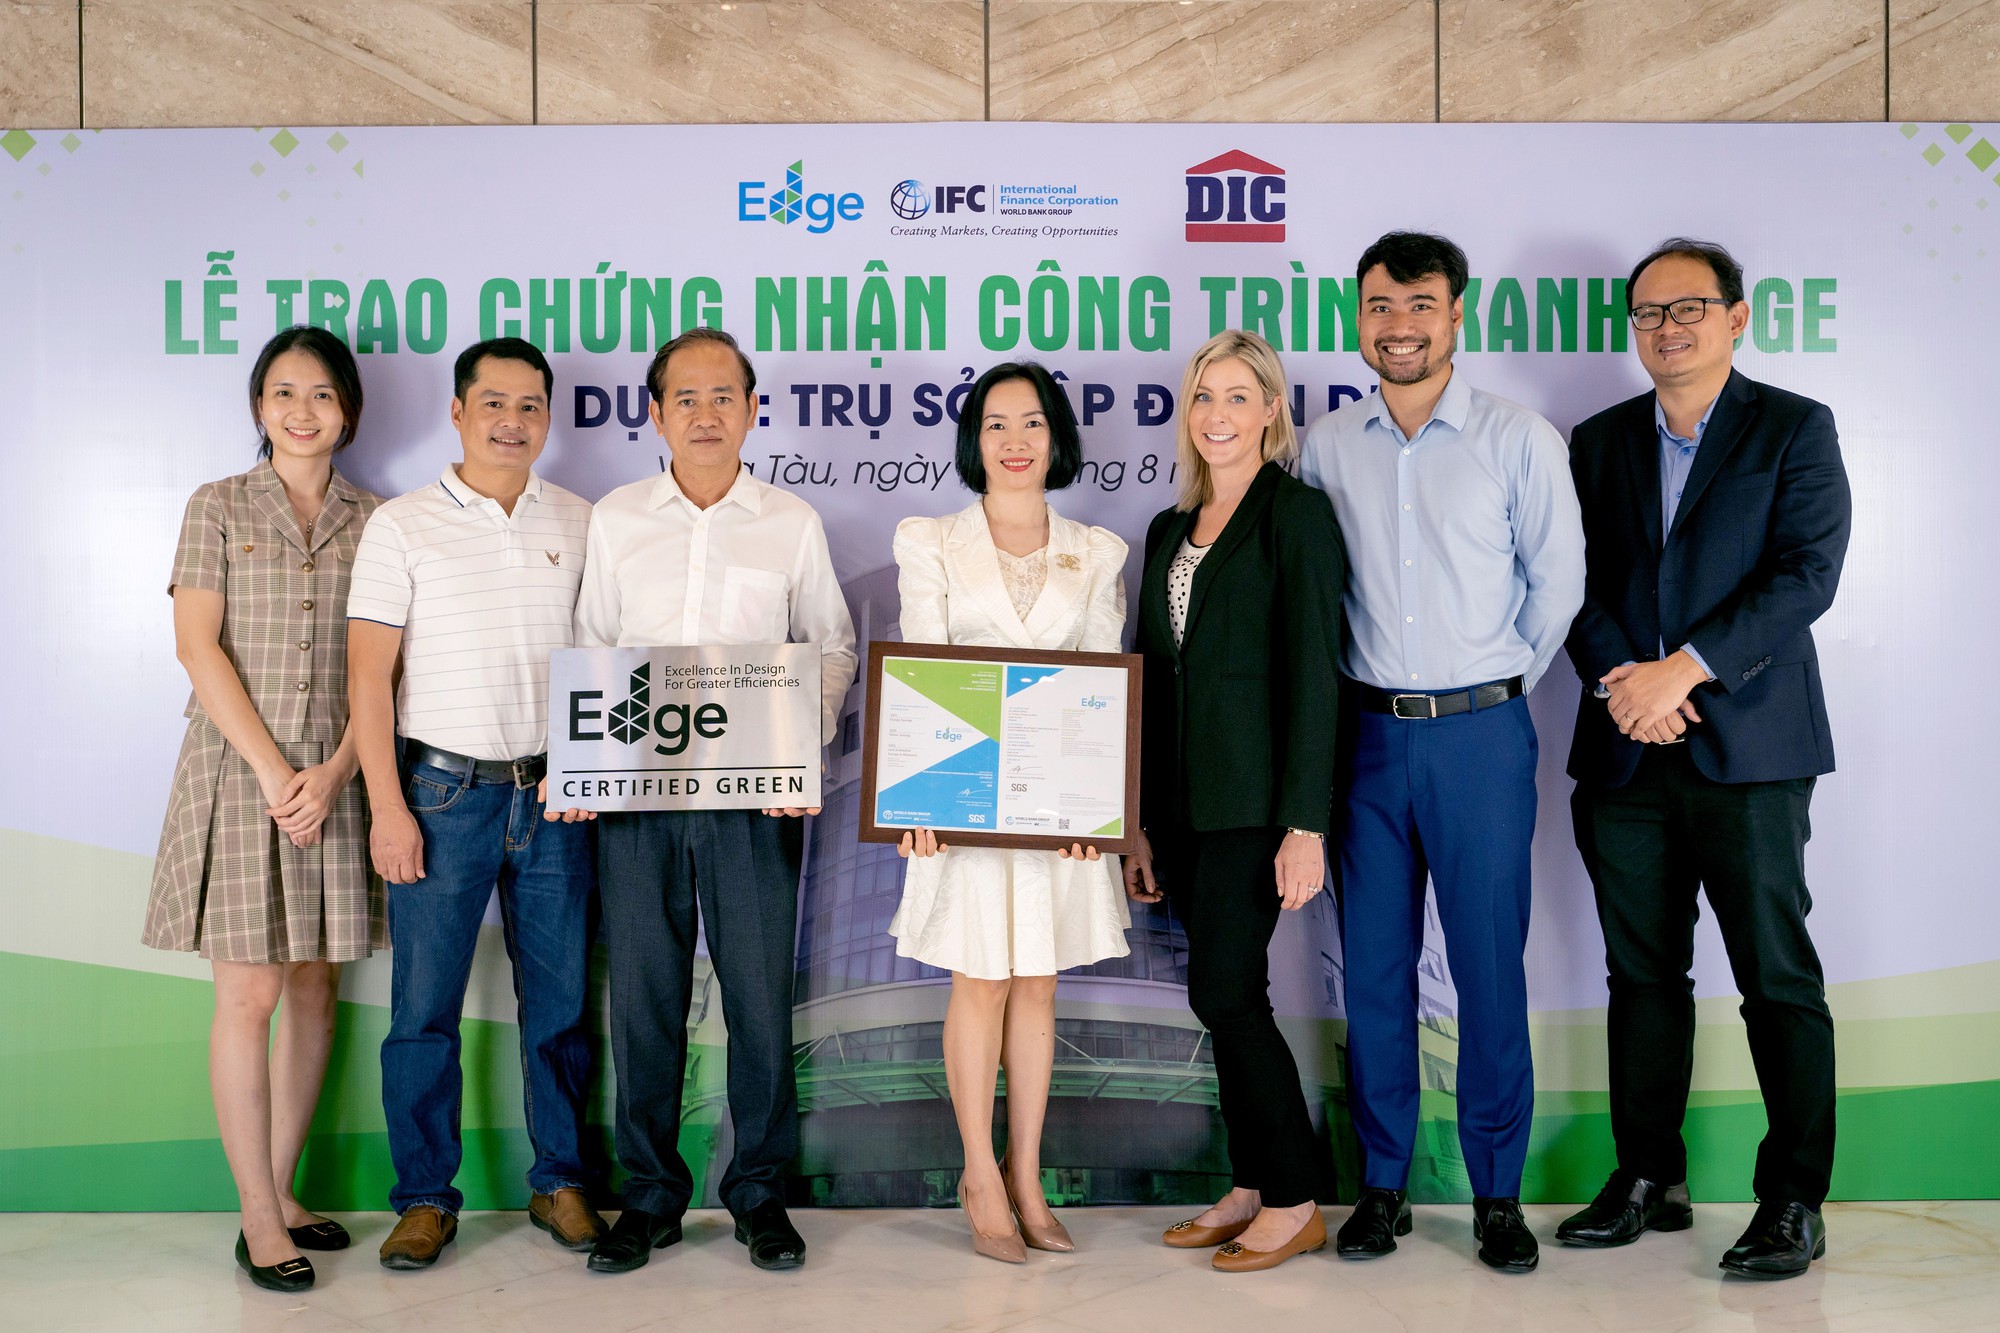 Trụ sở tập đoàn DIC đạt chứng nhận công trình xanh EDGE - Ảnh 1.